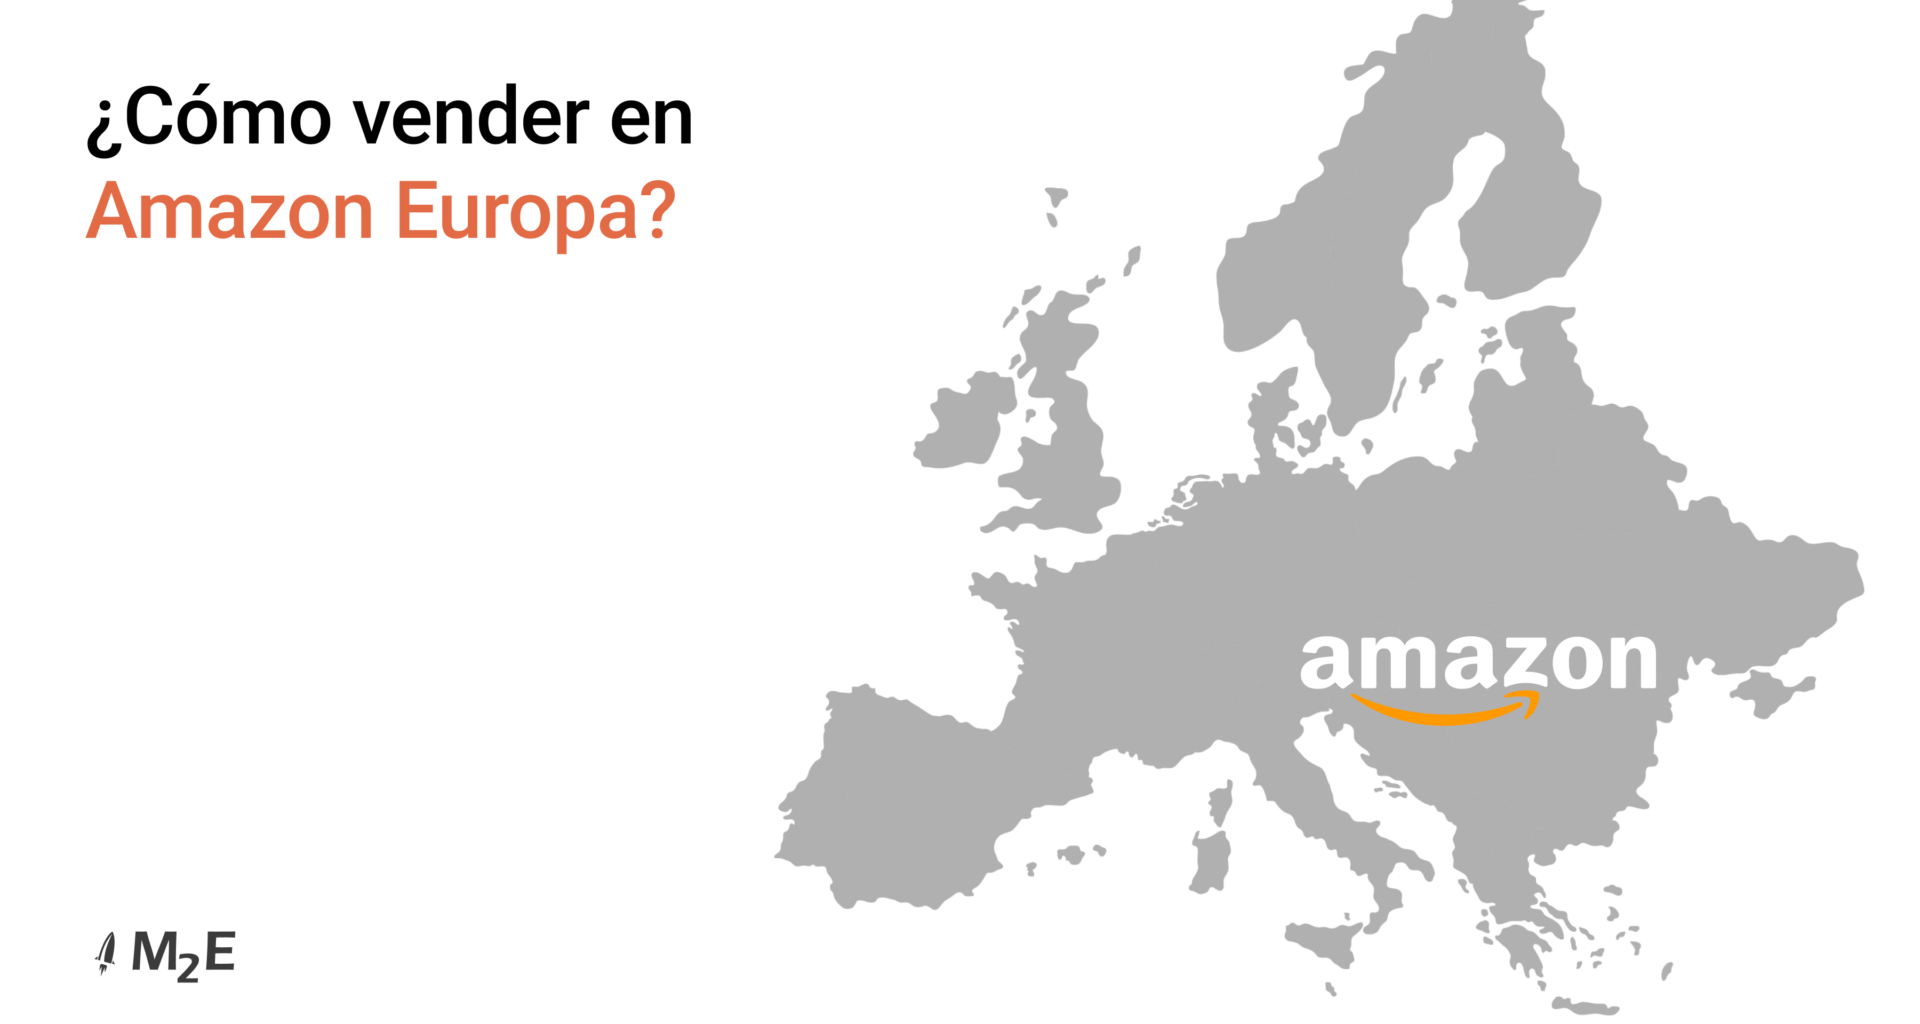 ¿Cómo vender en Amazon Europa? Espanol